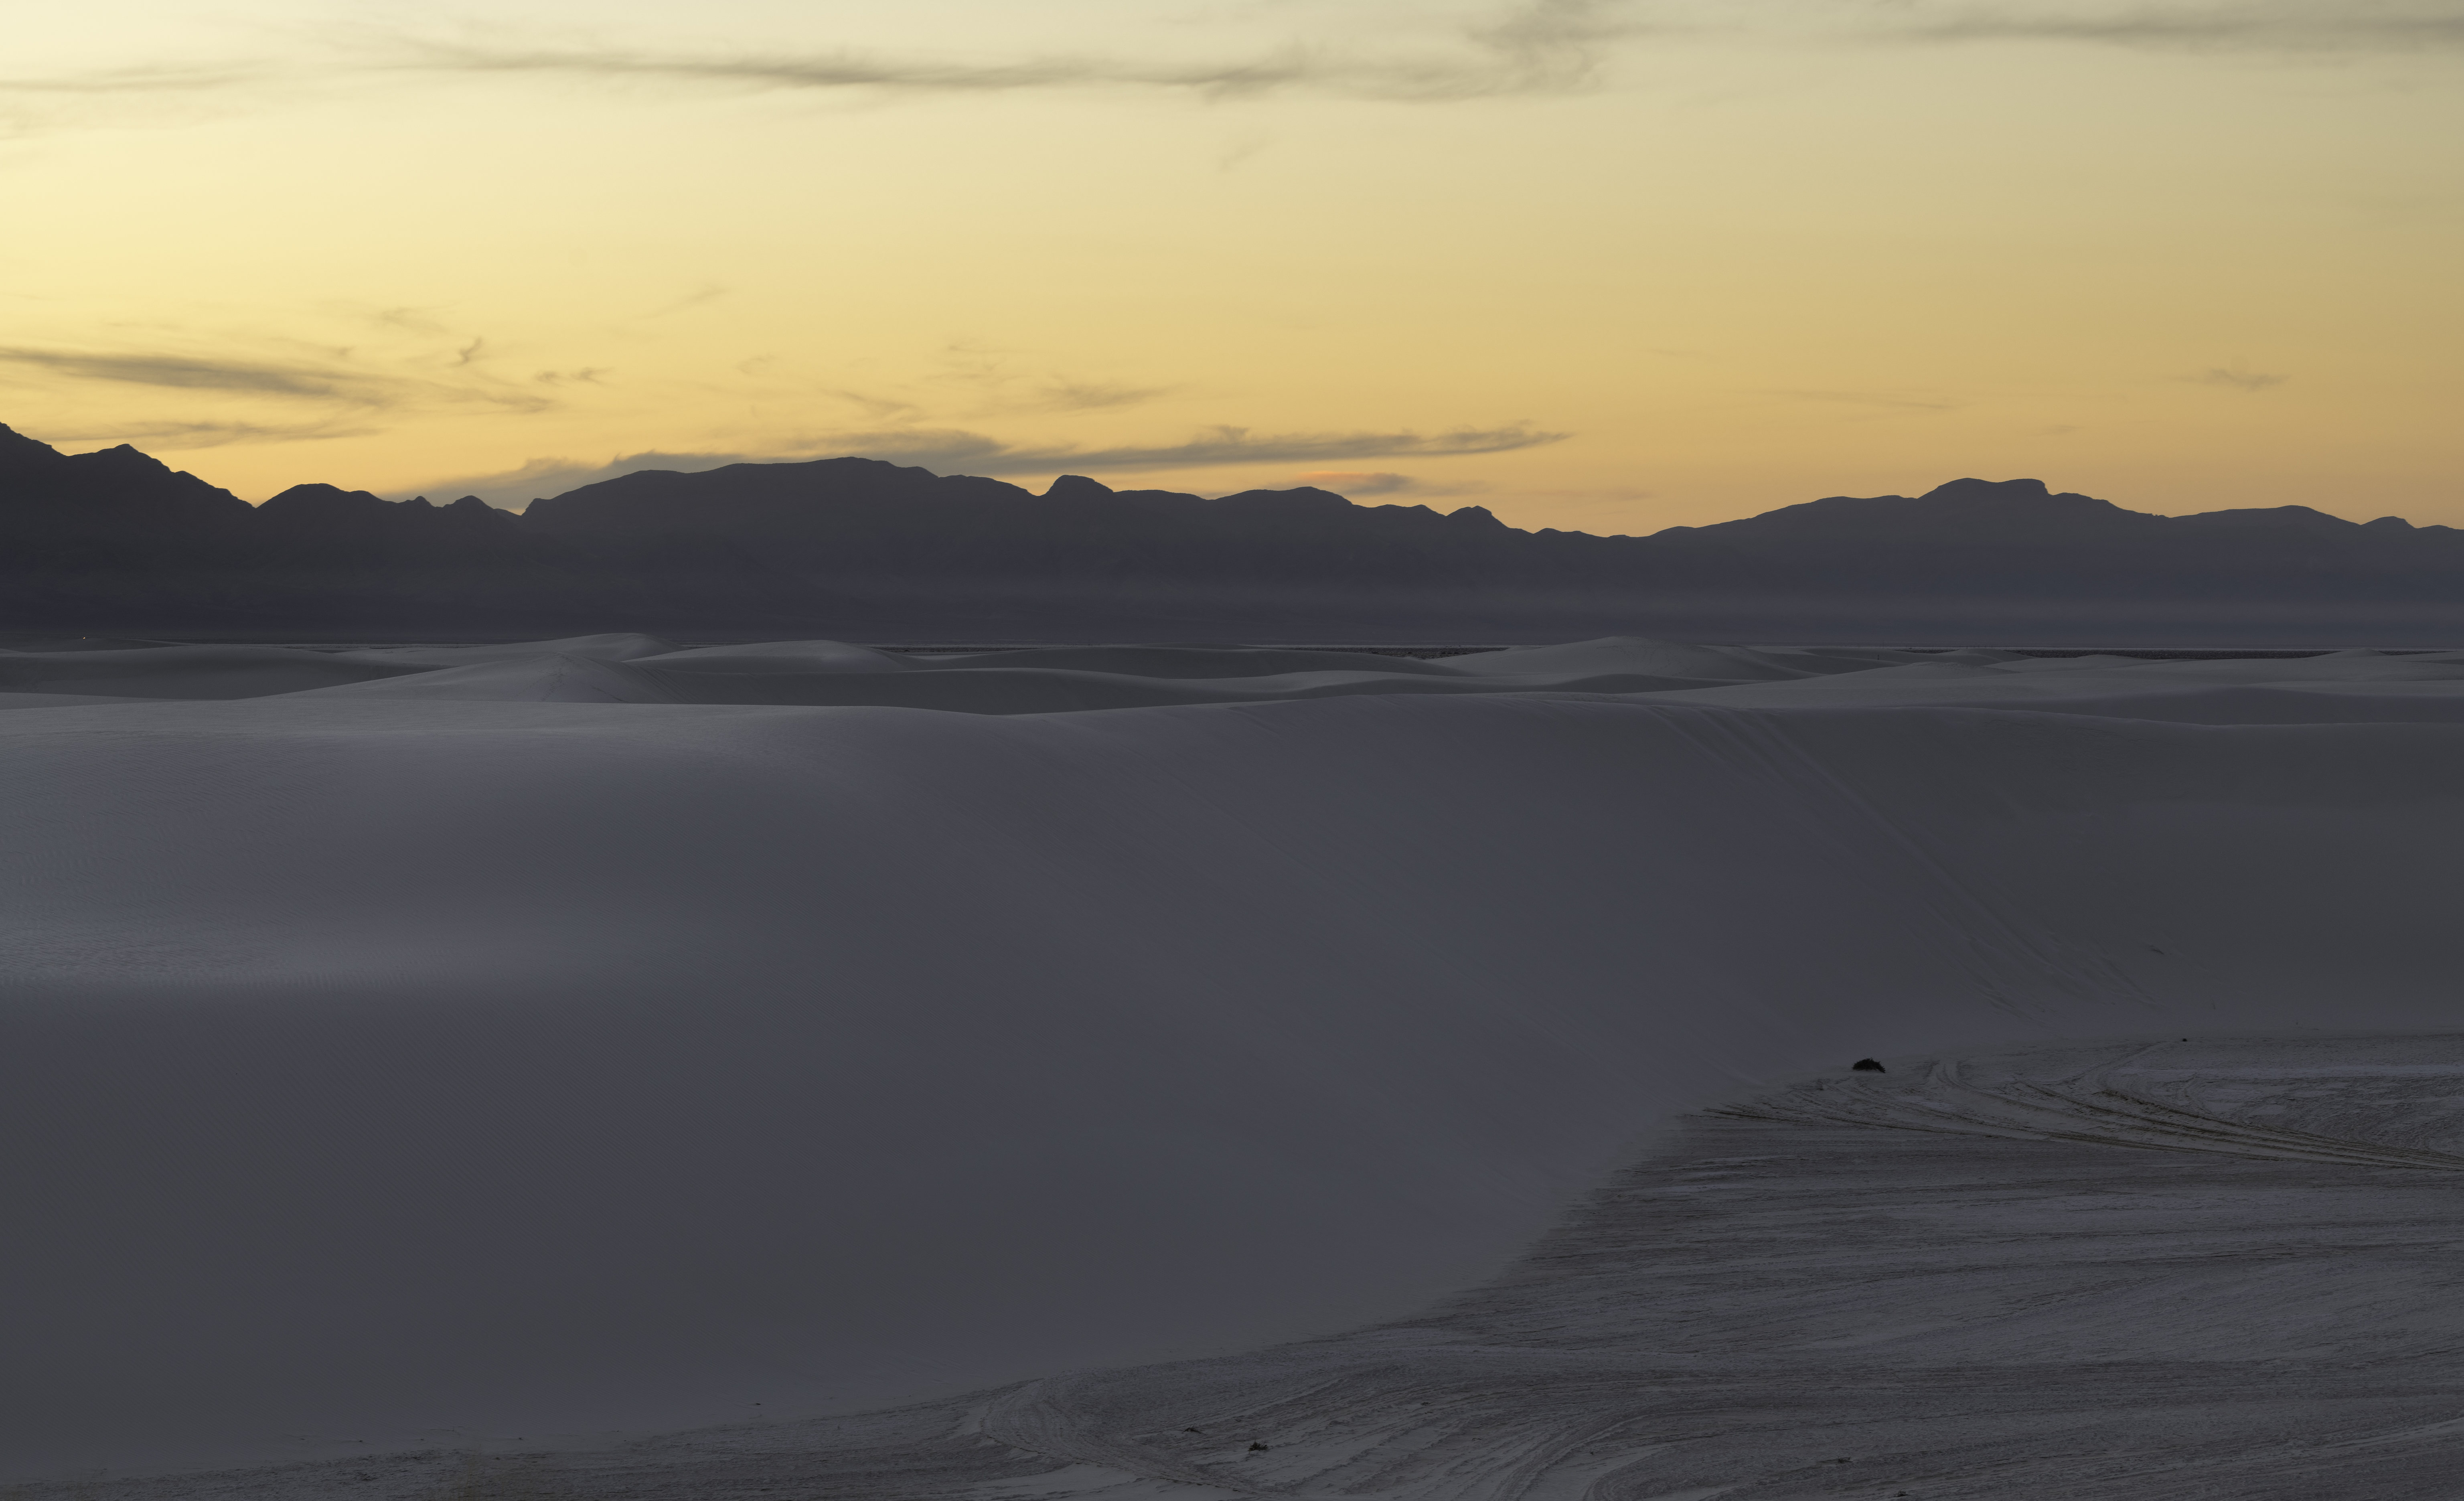 White Sands National Park Landscape Photography Sunrise Dunes Sand Mountains Gypsum Dunes Sunset Glo 6144x3743